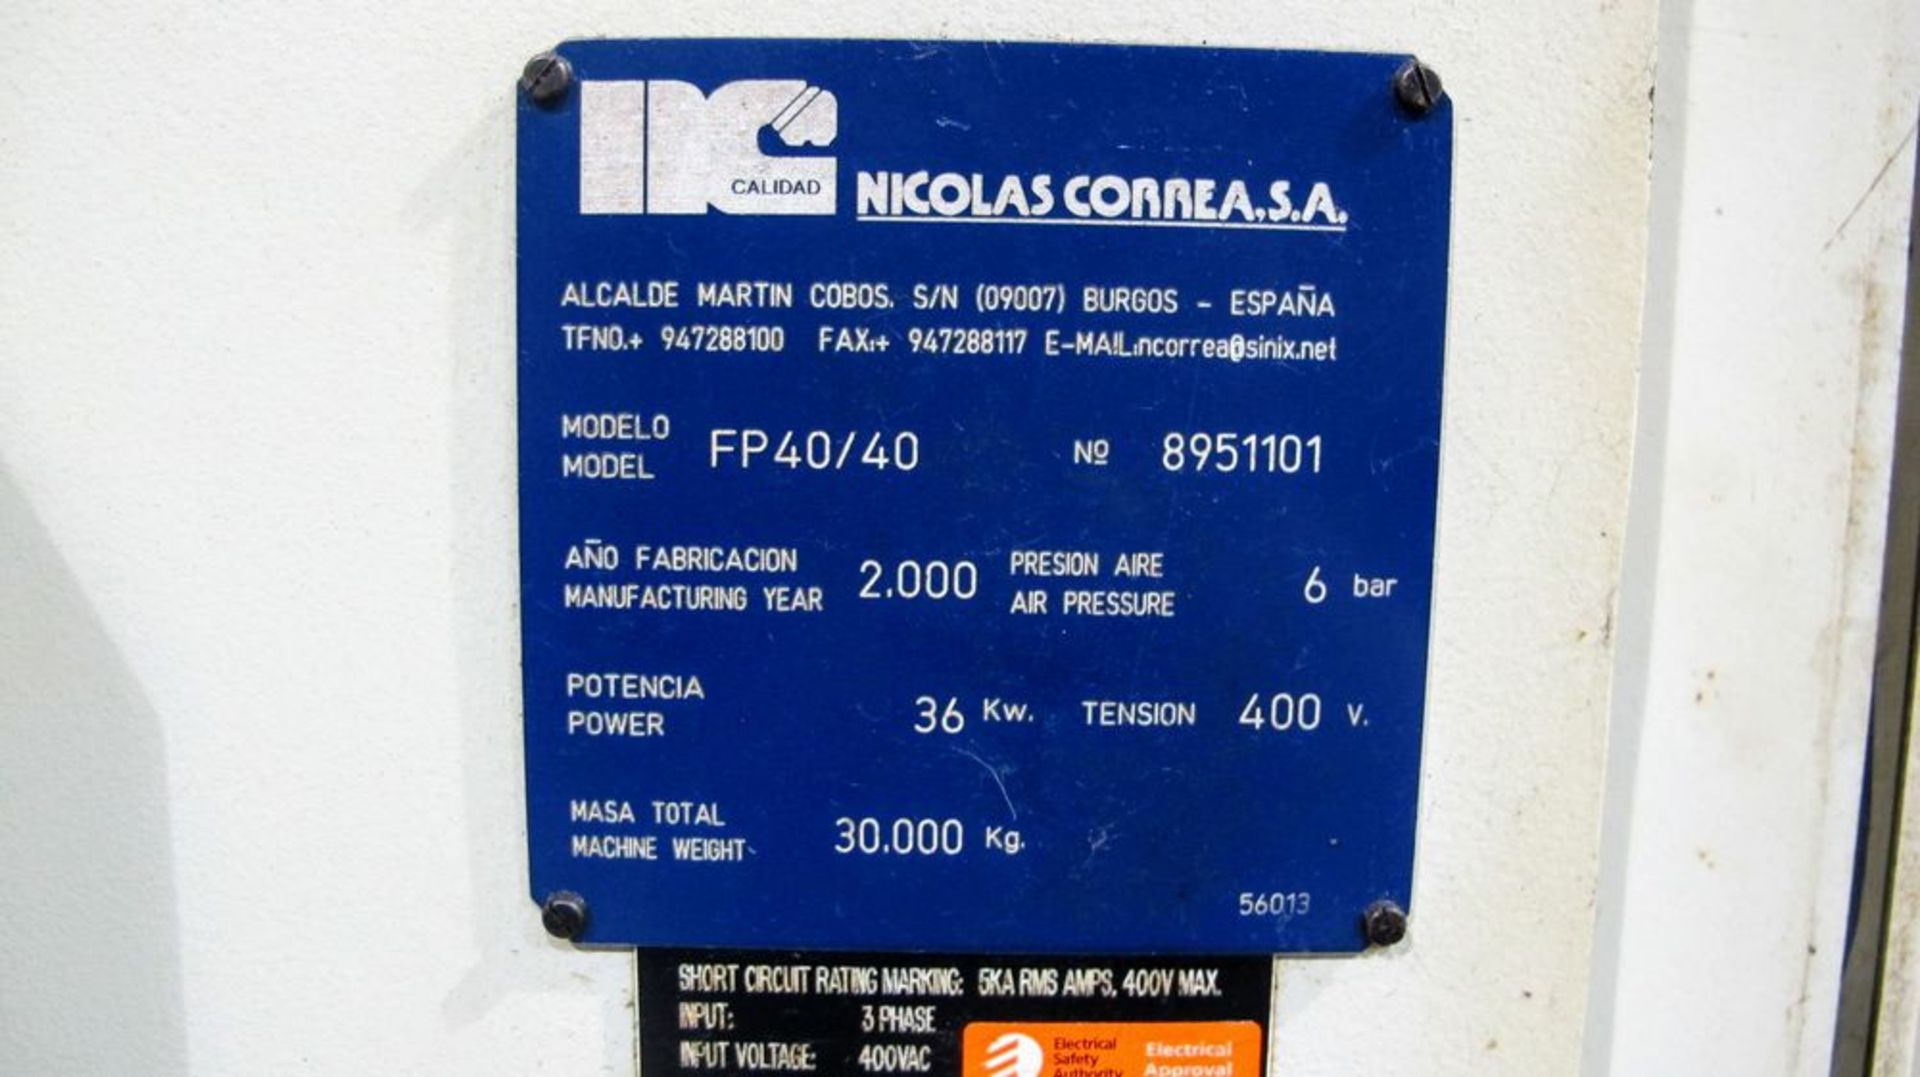 2000 NICOLAS CORREA FP-40/40 CNC Bridge Type Vertical Machining Center, s/n 8951101, 50” x 160” - Image 15 of 15